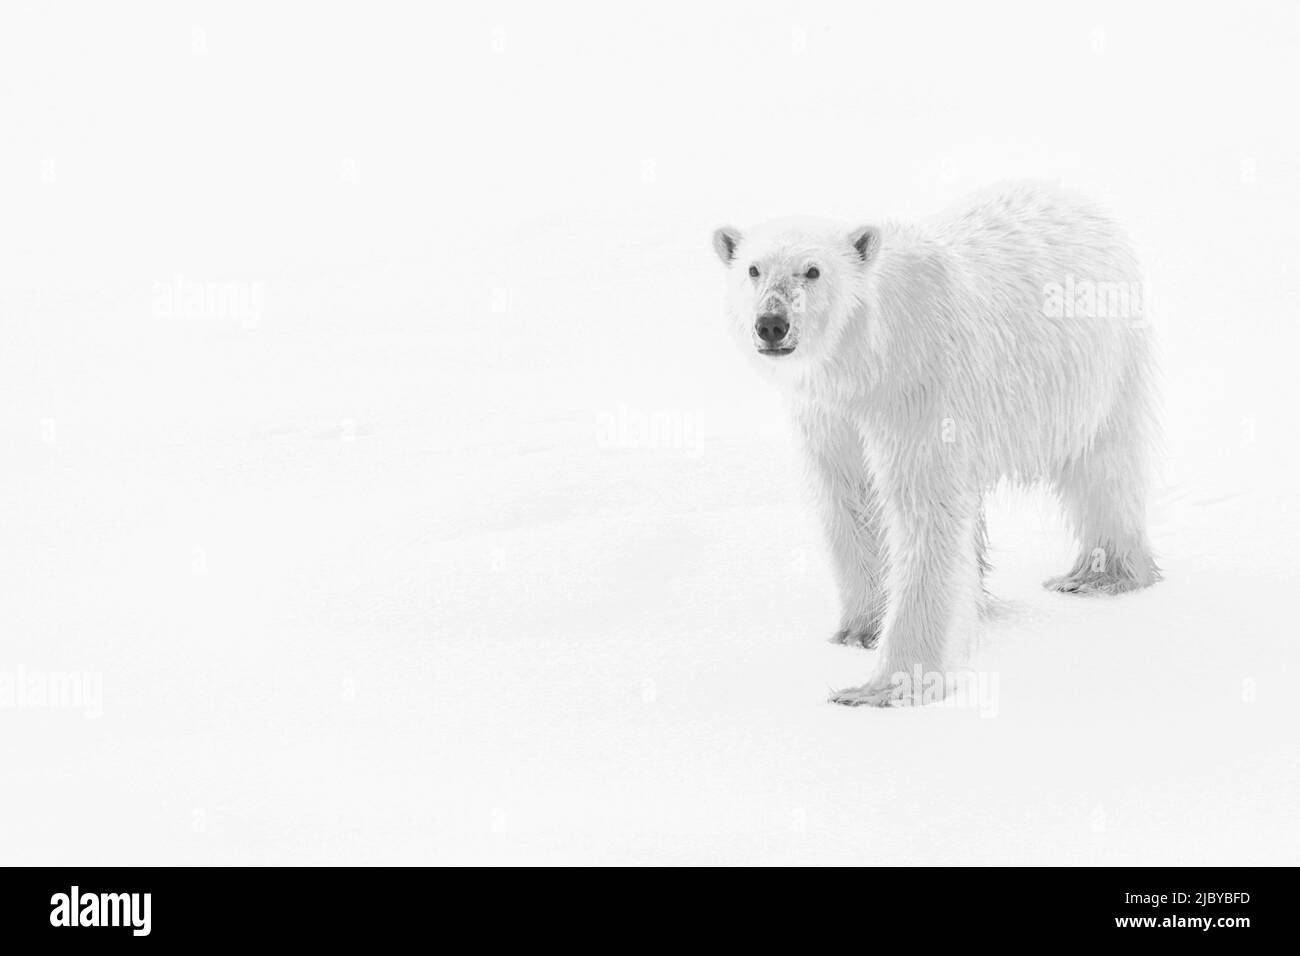 High Key, Noir et blanc, Ours polaire (Ursus maritimus) sur la banquise, Océan Arctique, détroit d'Hinloway, Svalbard, Norvège Banque D'Images